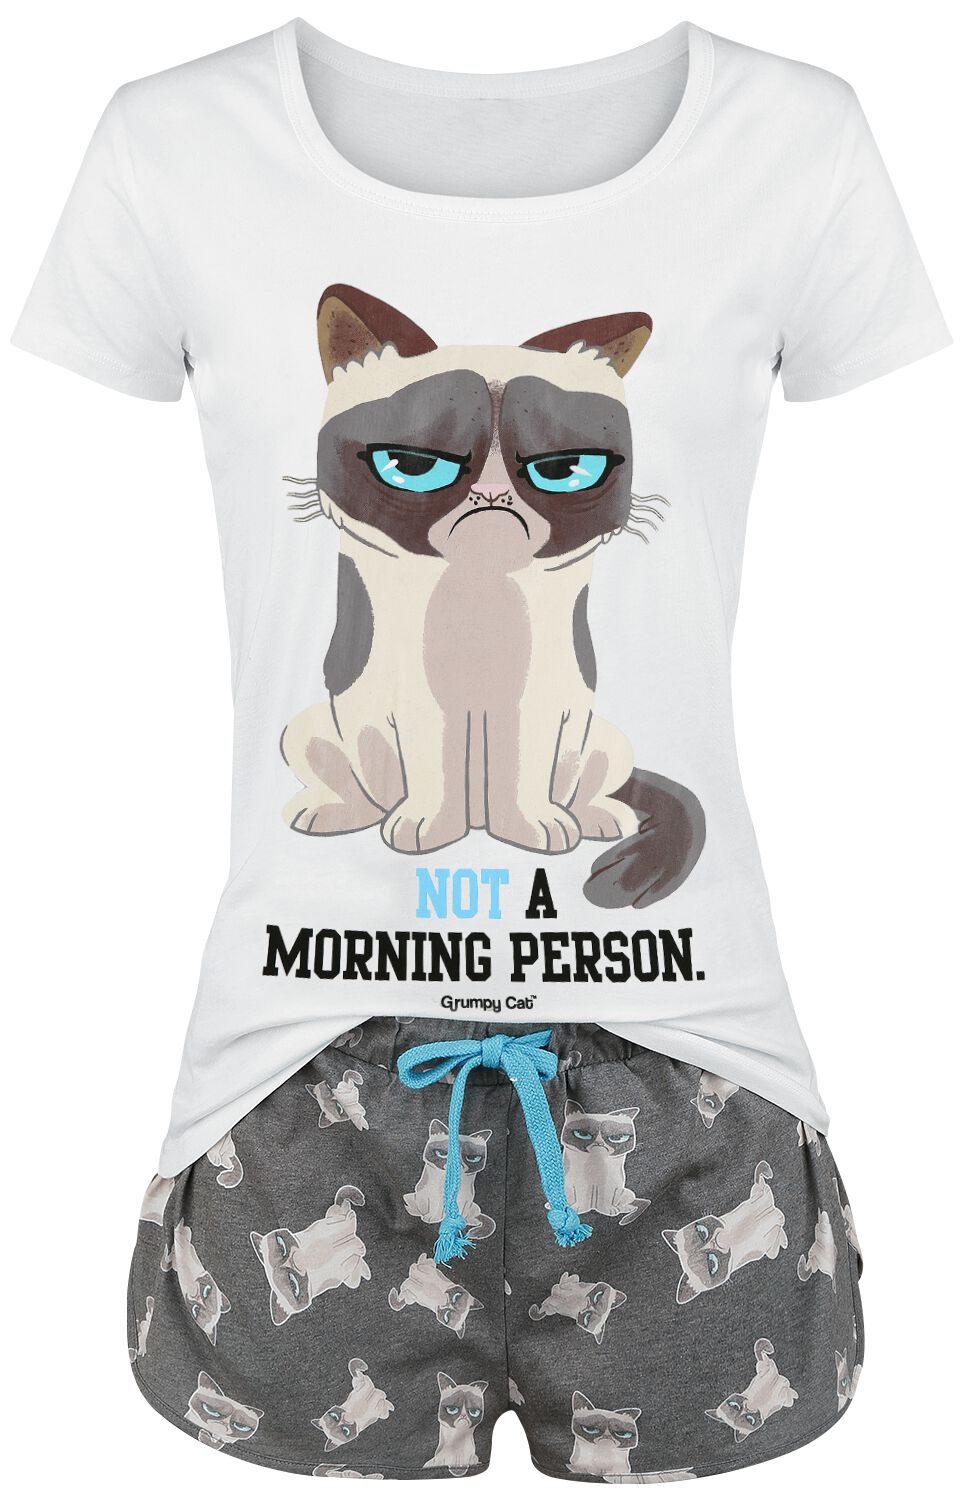 Grumpy Cat Schlafanzug - Not A Morning Person! - S bis 3XL - für Damen - Größe M - grau/weiß  - EMP exklusives Merchandise! von Grumpy Cat